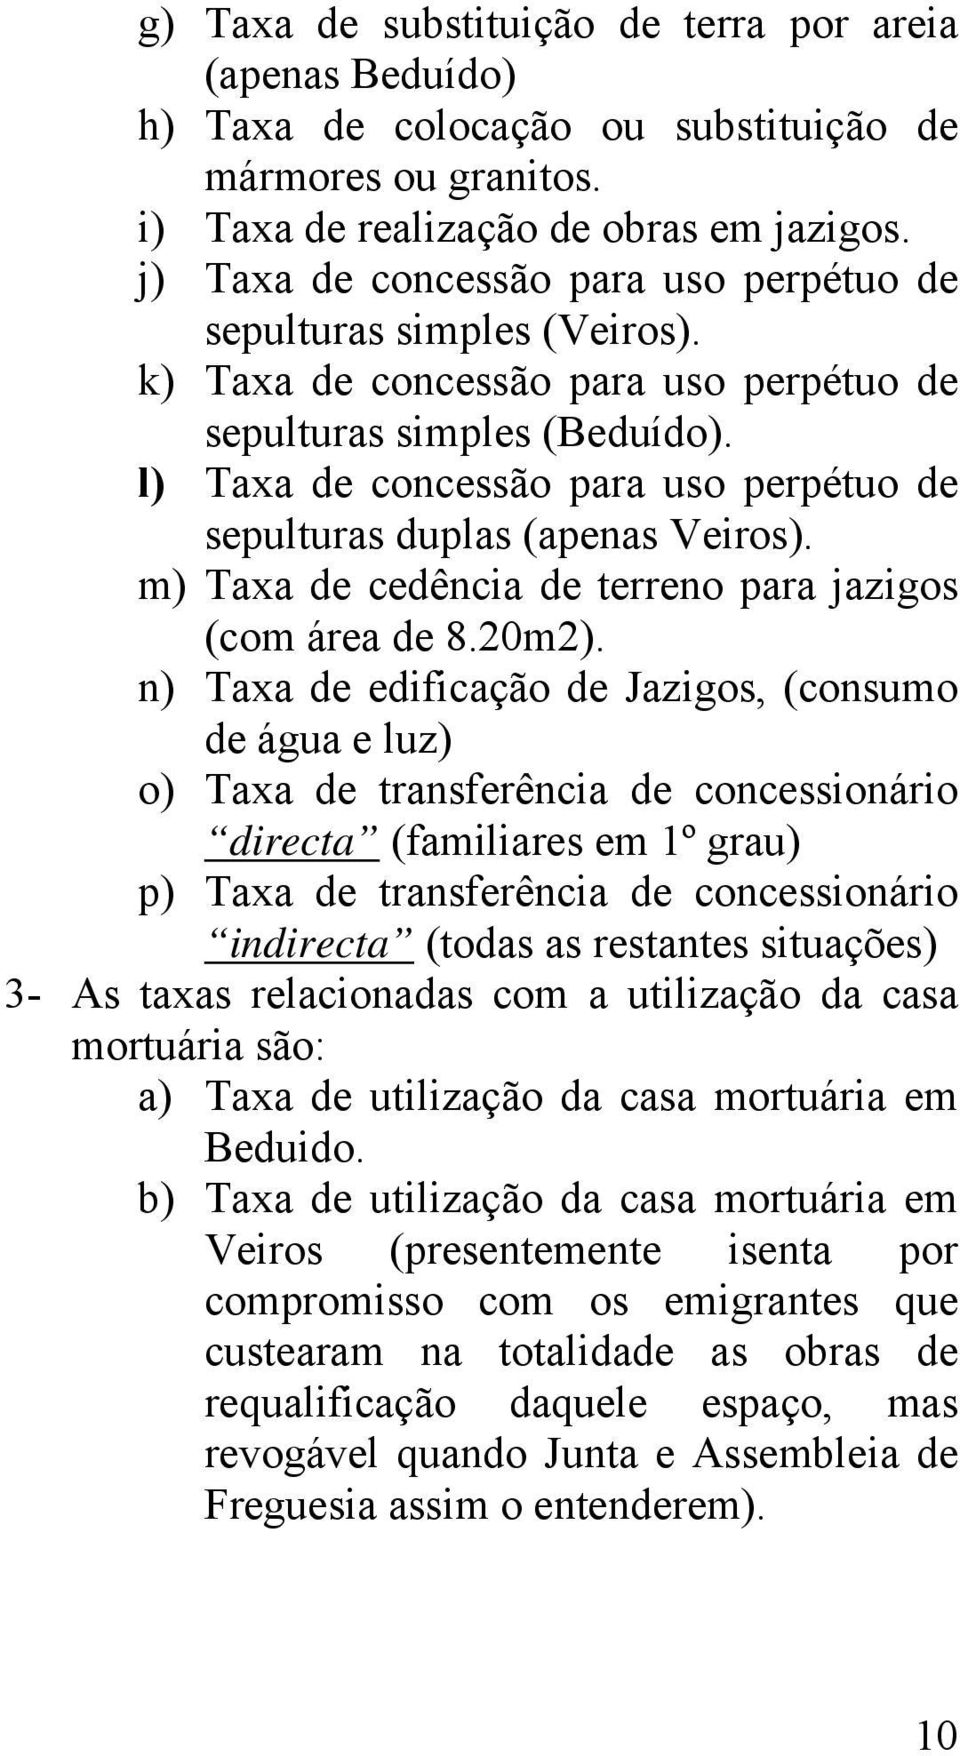 l) Taxa de concessão para uso perpétuo de sepulturas duplas (apenas Veiros). m) Taxa de cedência de terreno para jazigos (com área de 8.20m2).